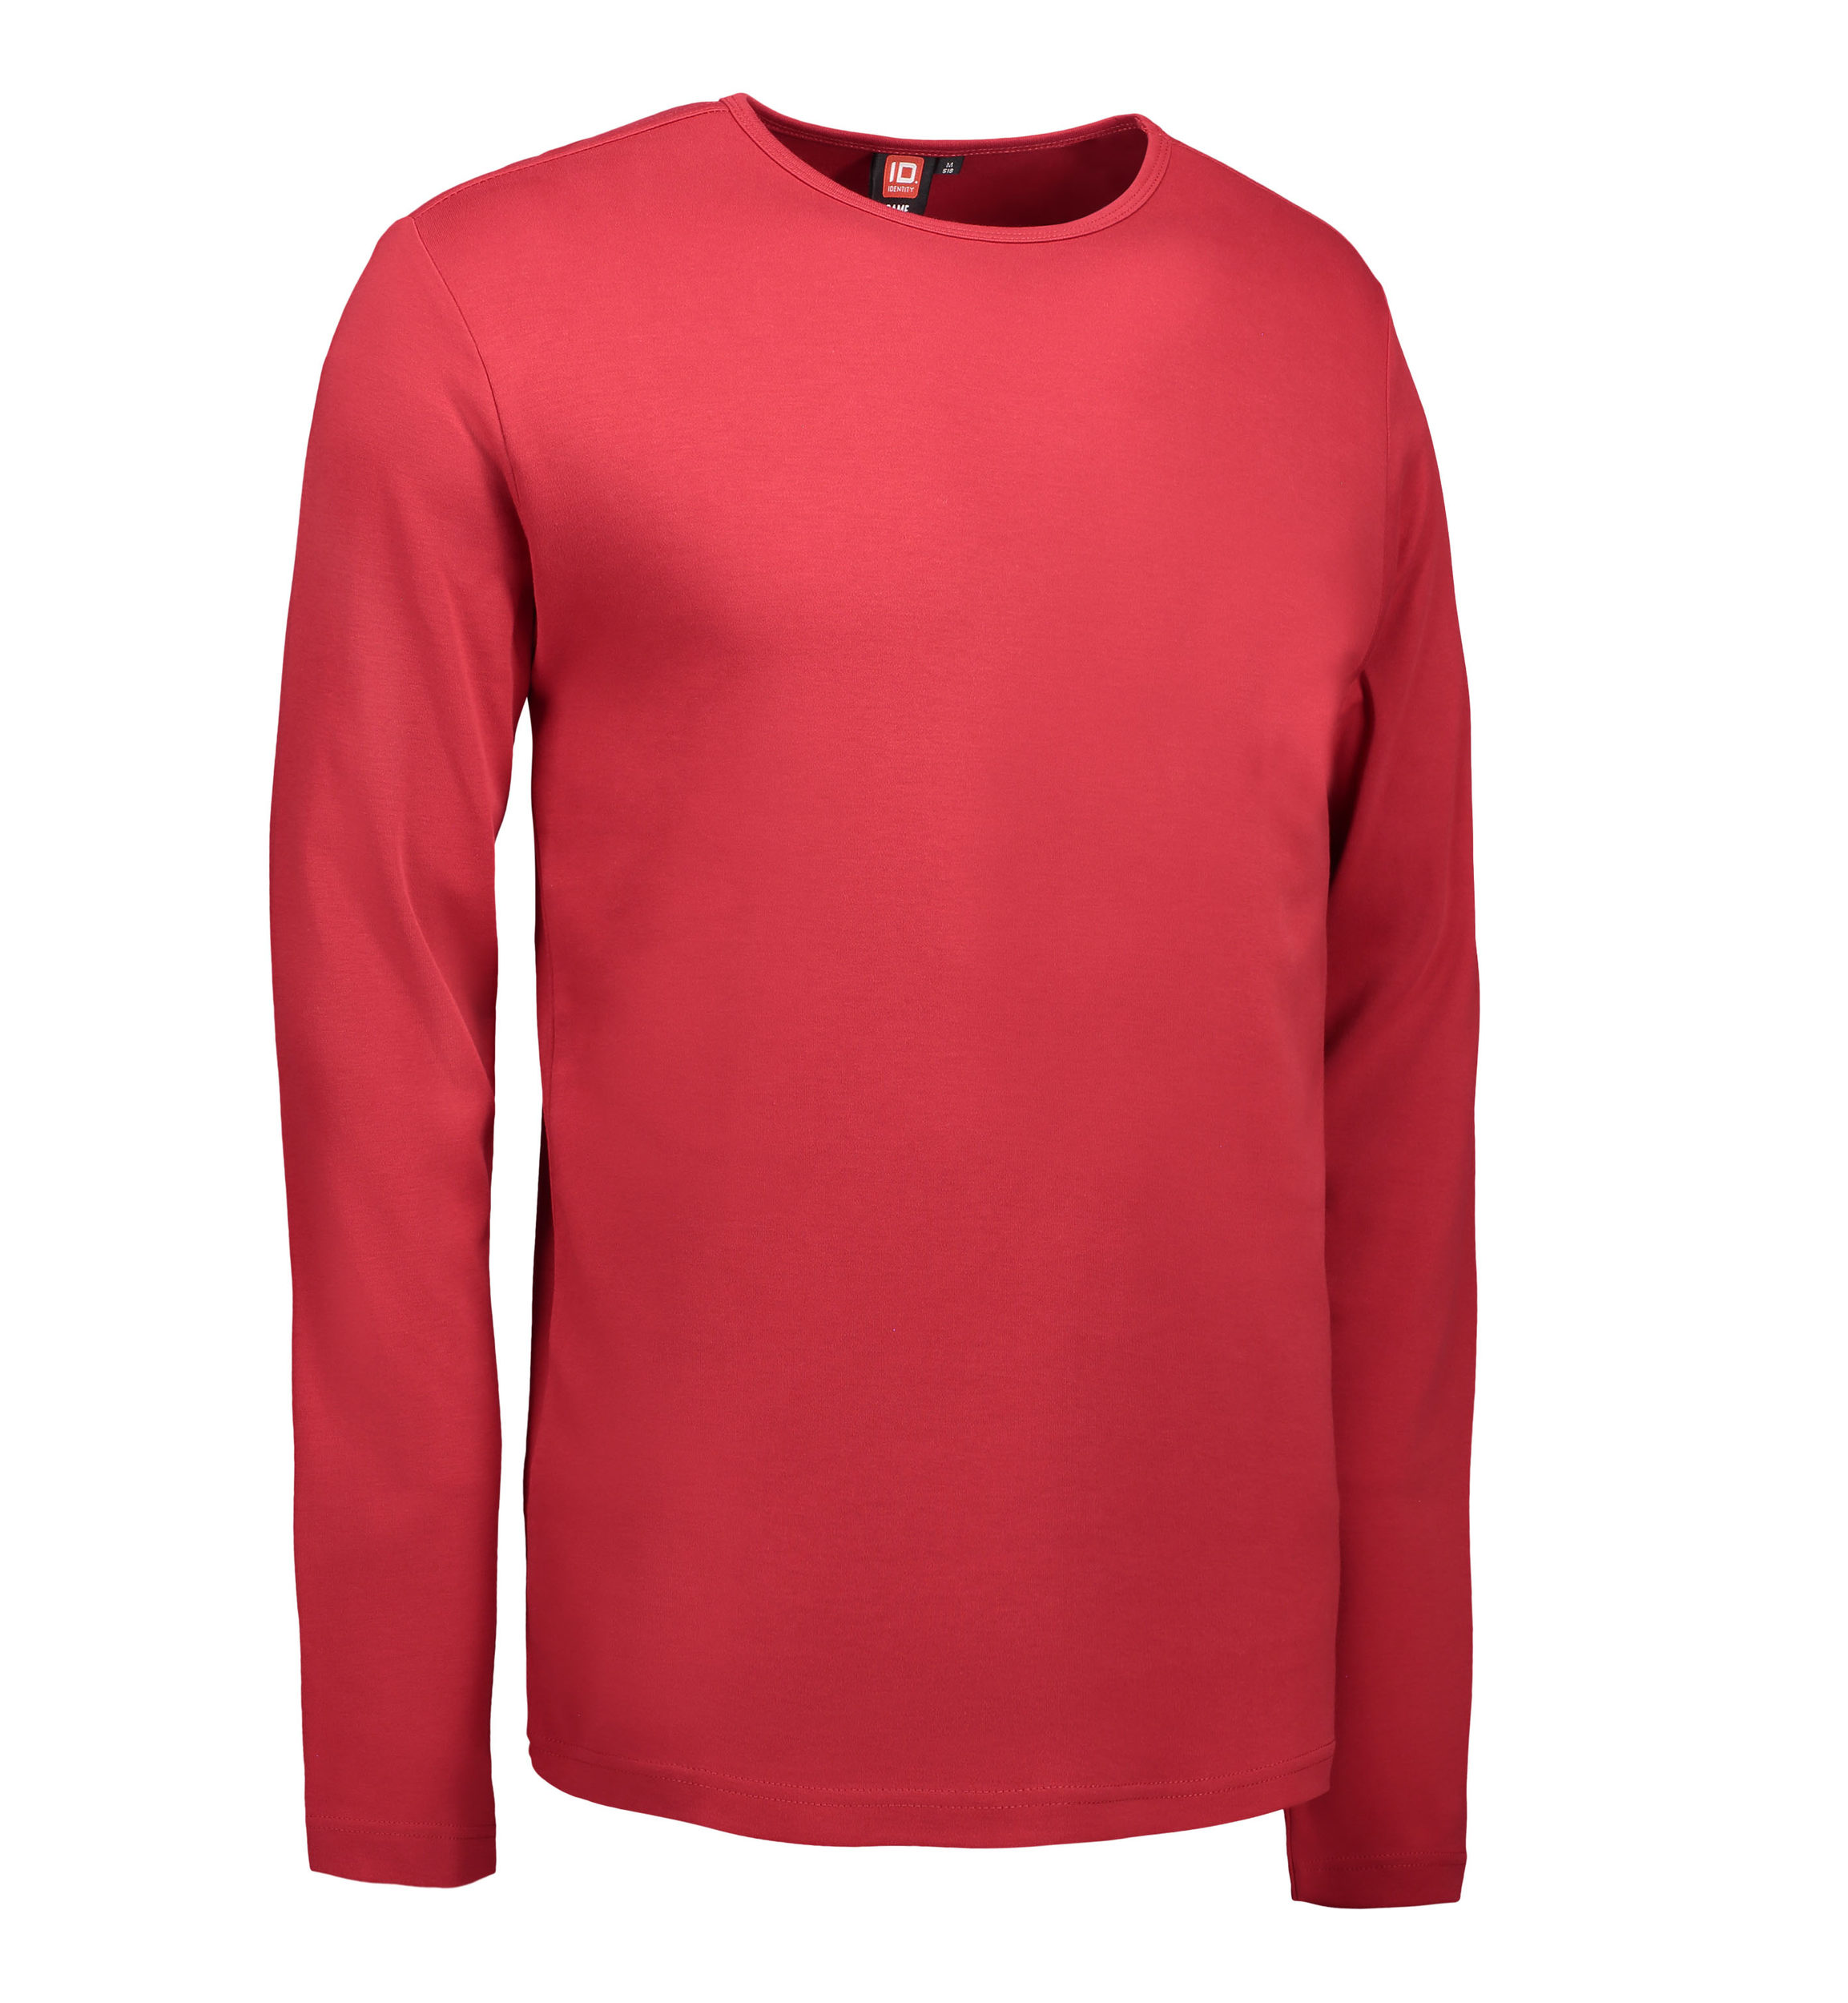 Billede af Rød langærmet t-shirt til mænd - L hos Sygeplejebutikken.dk